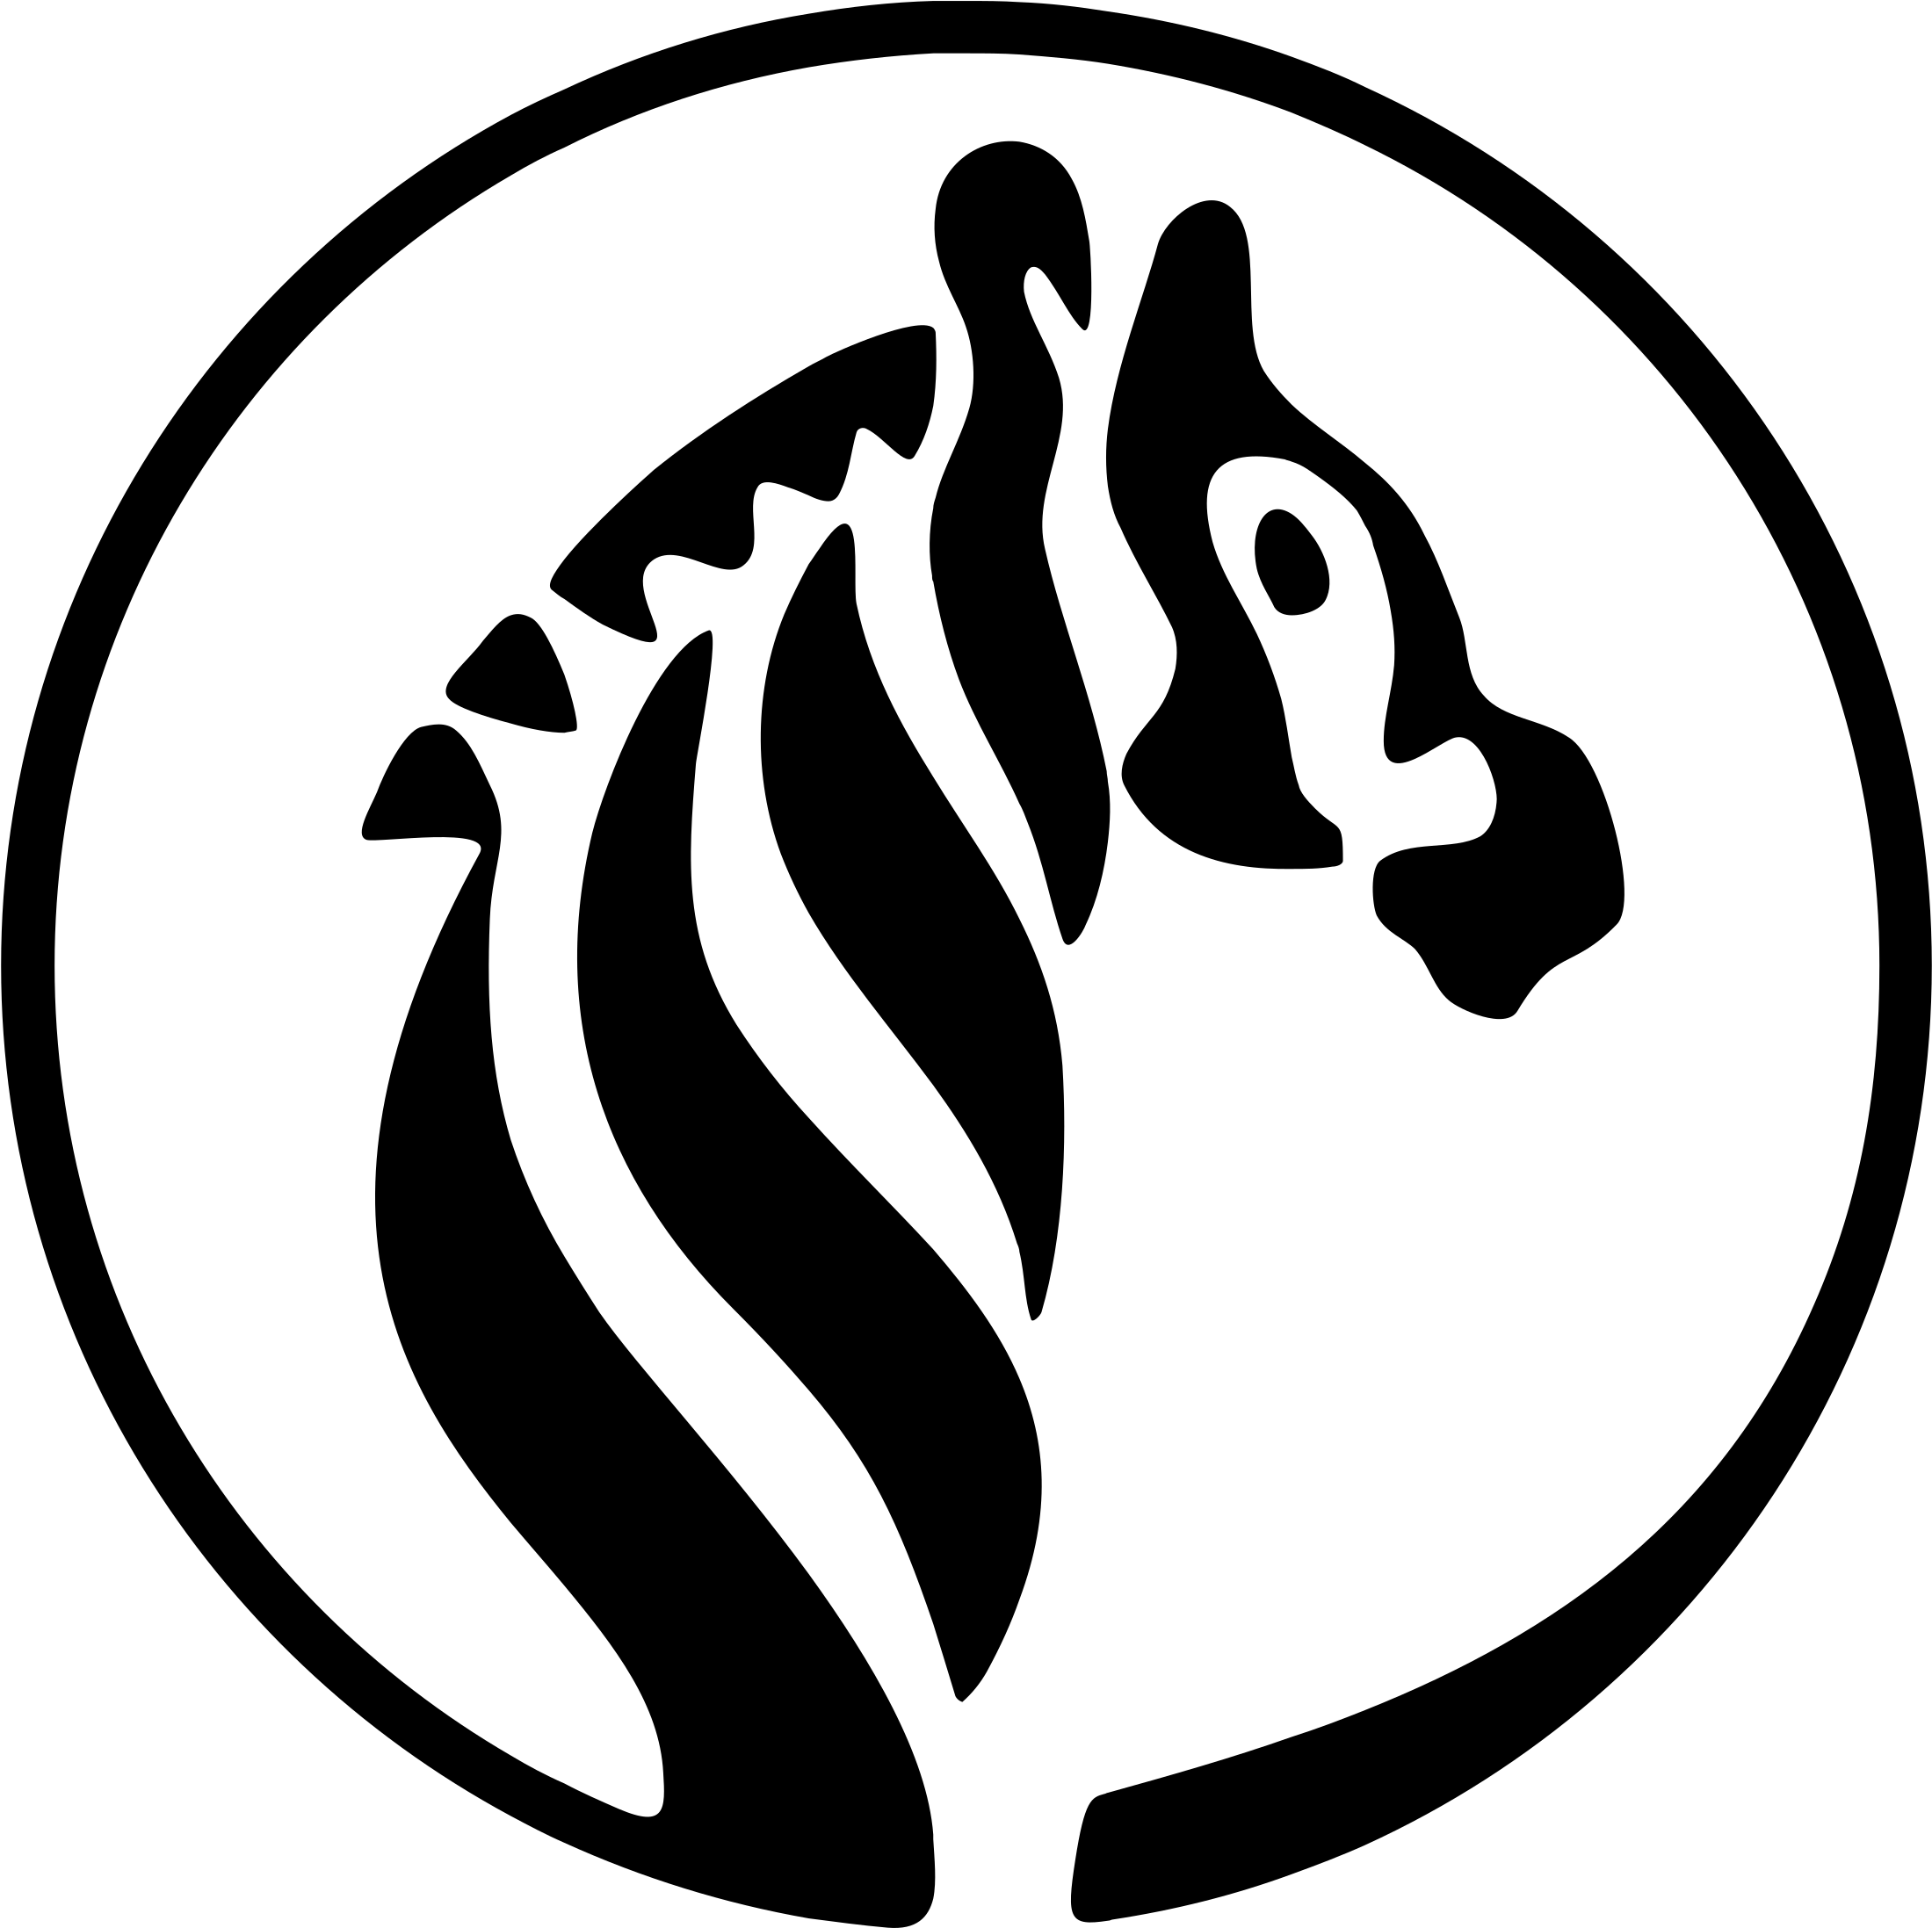 Zebra Logo Black And White - Zebra Vector (2400x2400)